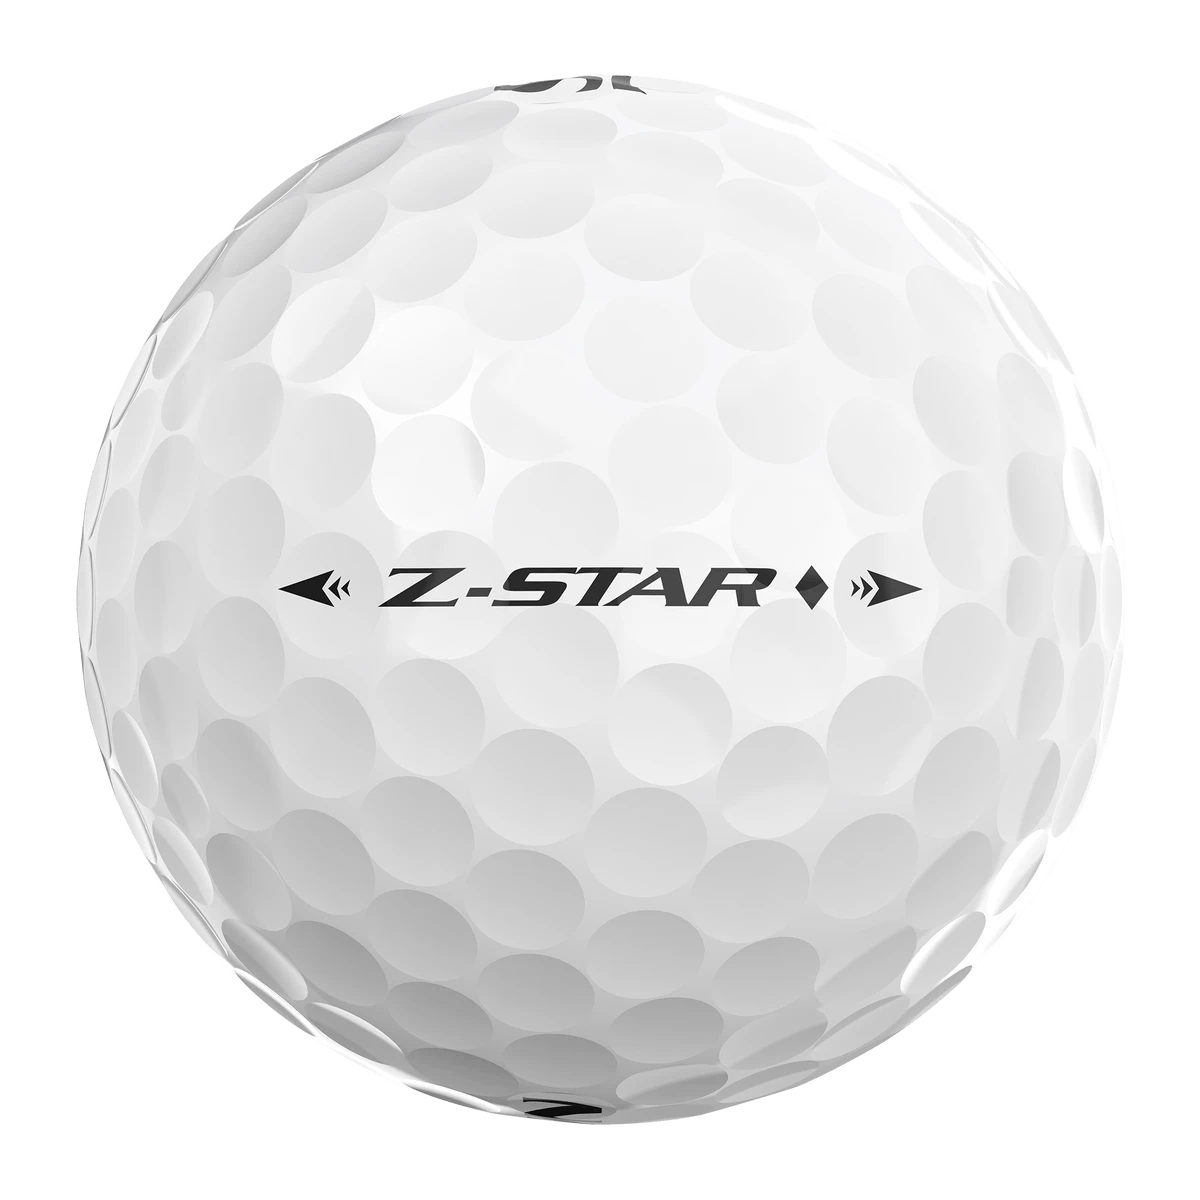 Srixon Z-Star Diamond Golf Balls· White